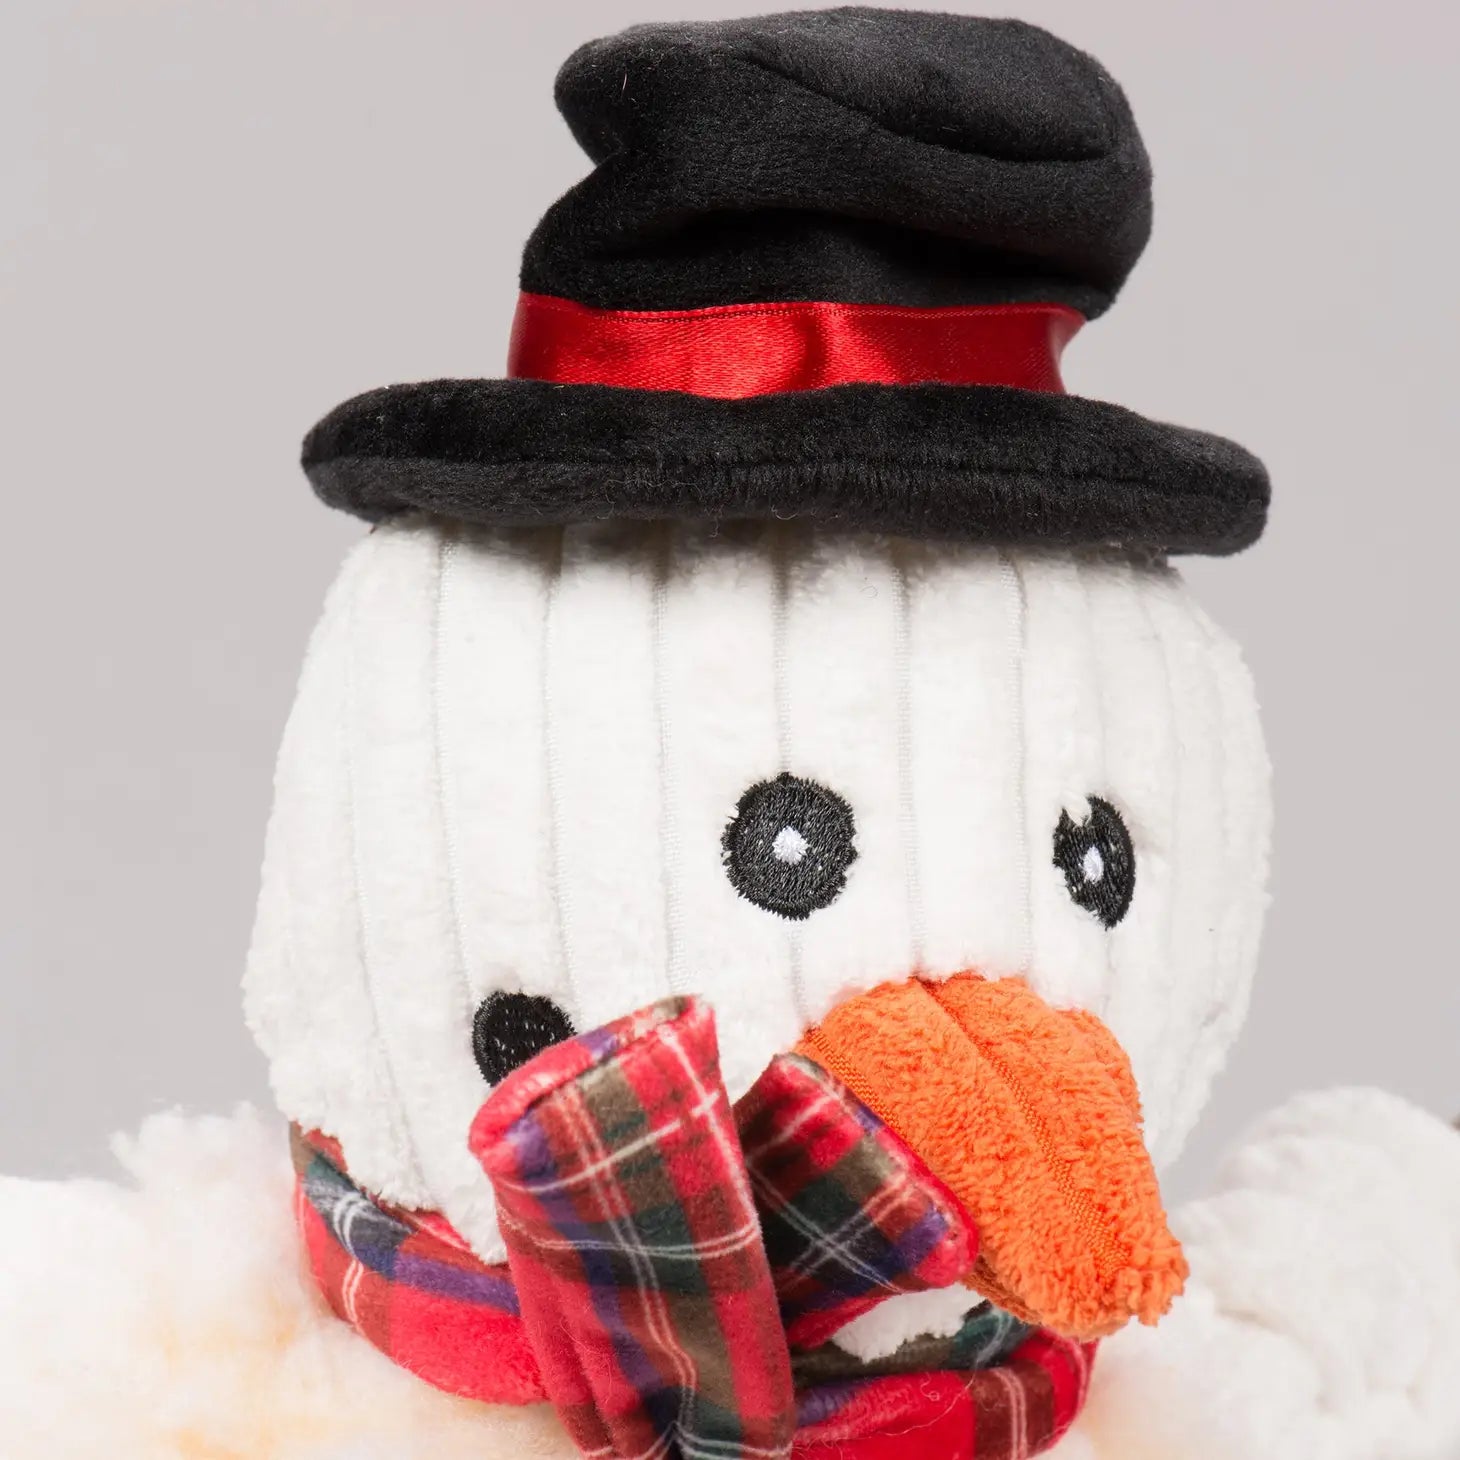 McSnowy The Snowman FlufferKnottie